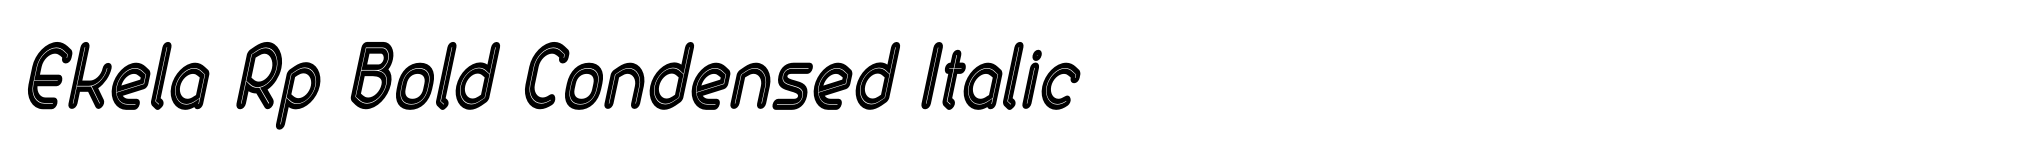 Ekela Rp Bold Condensed Italic image